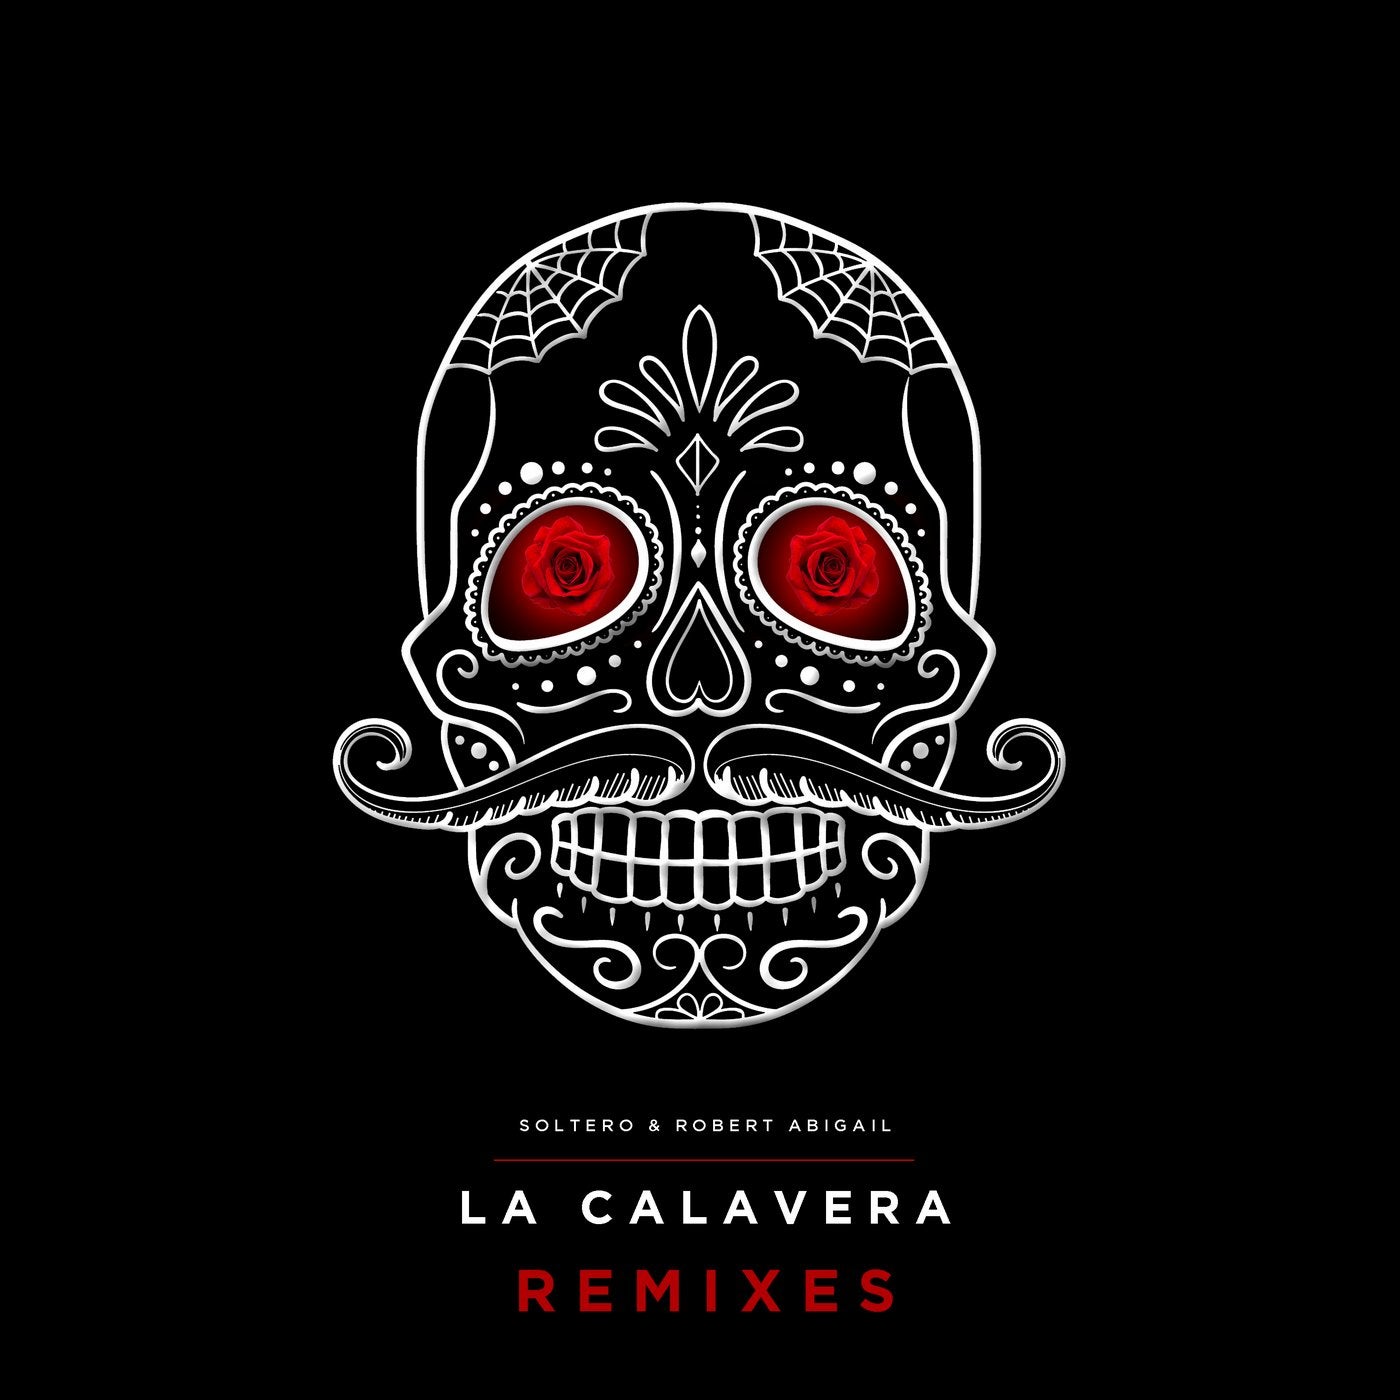 La Calavera - Remixes